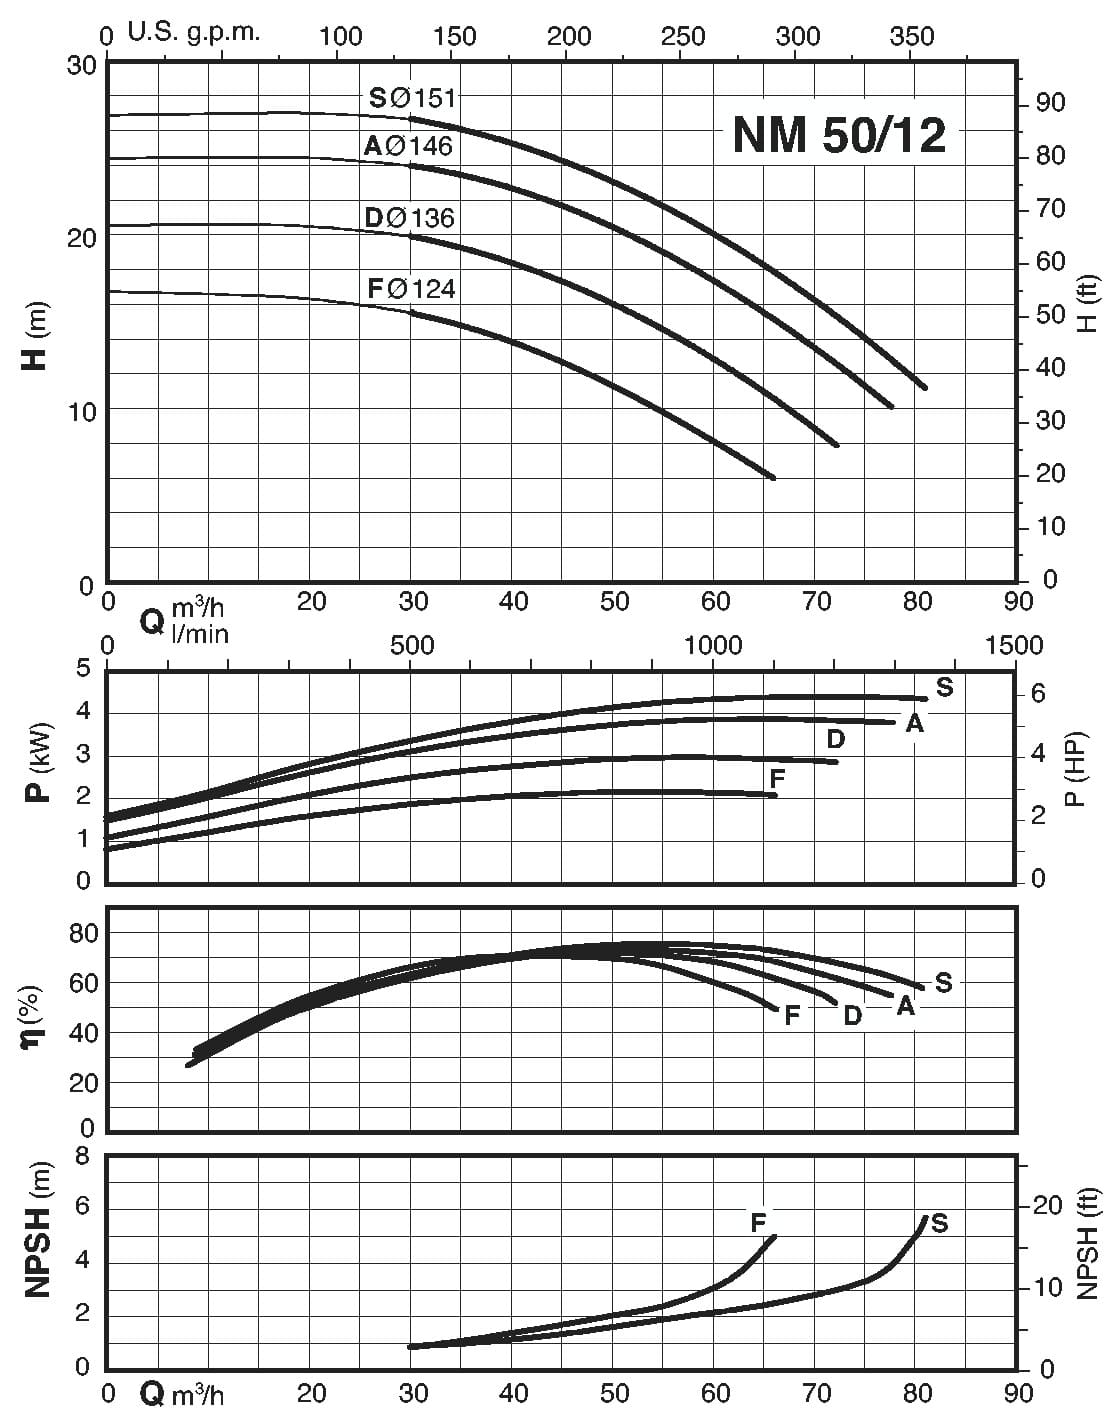  characteristics of pump calpeda B-NM50/12F/A 